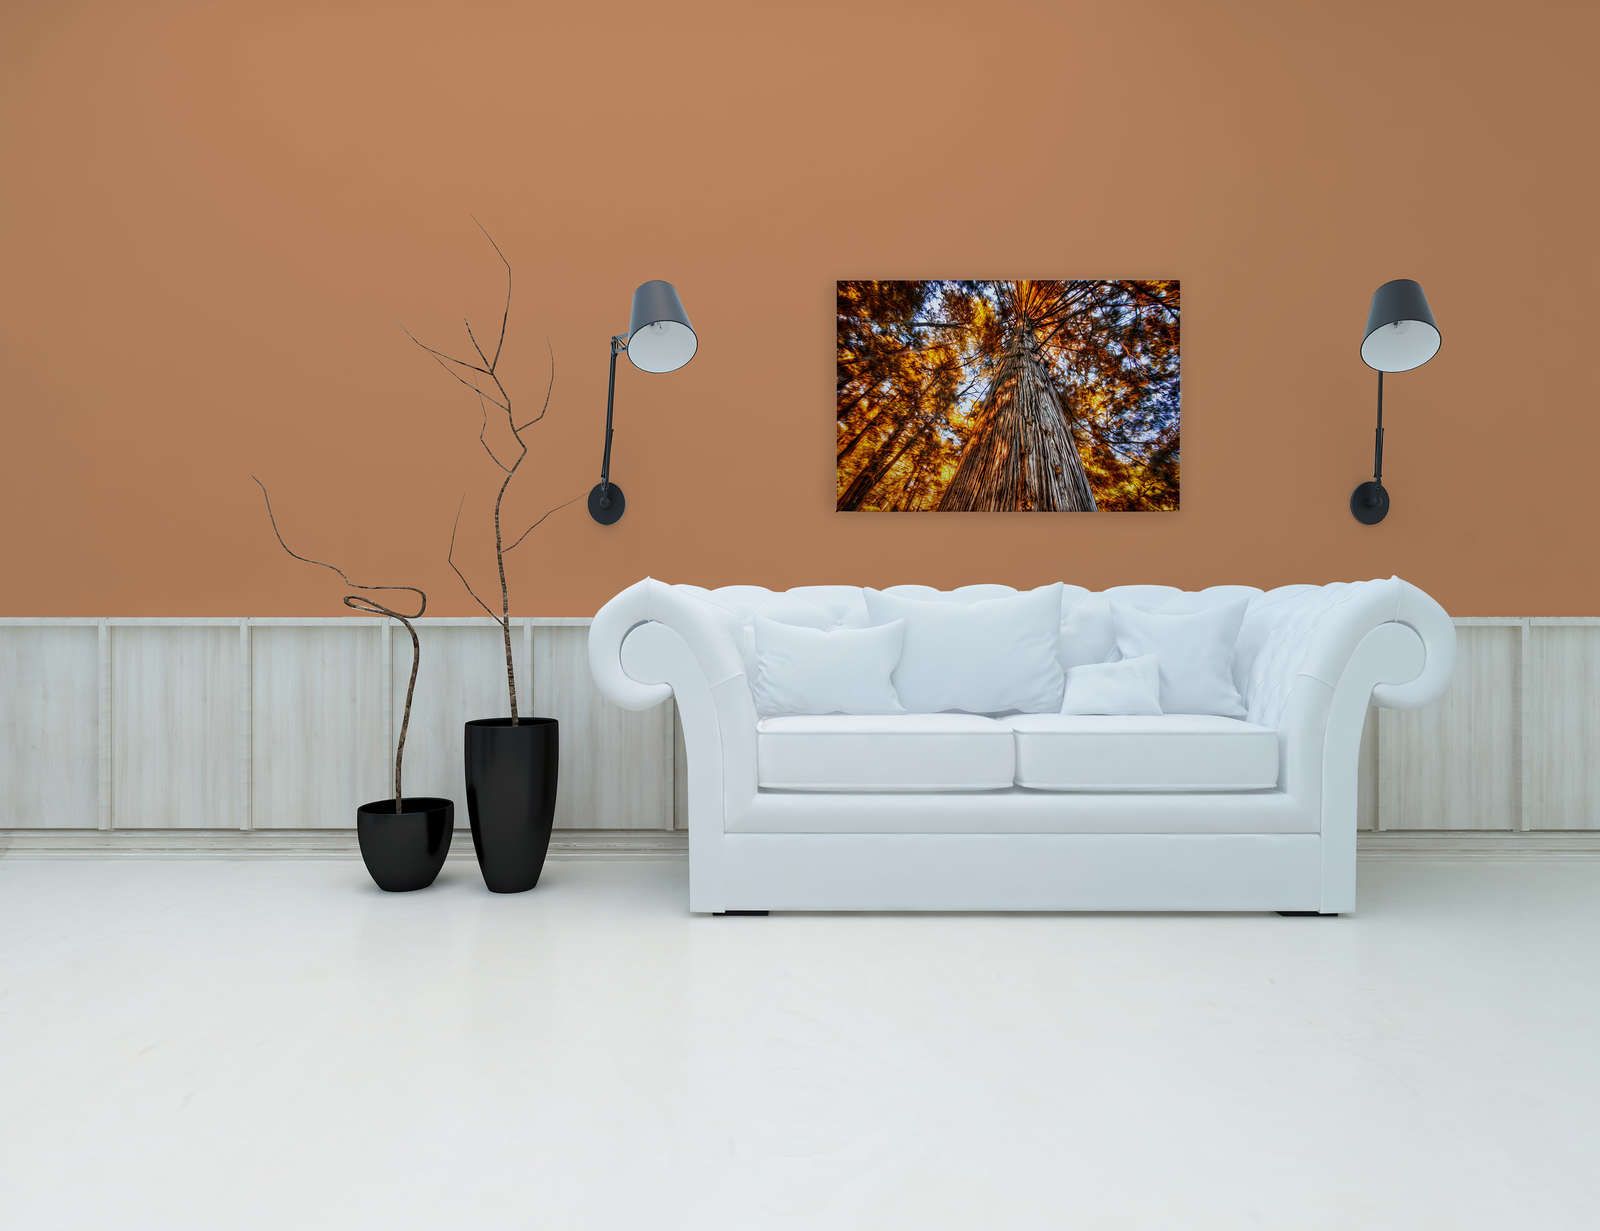             Tableau toile Vue de la cime d'un arbre aux couleurs incandescentes - 0,90 m x 0,60 m
        